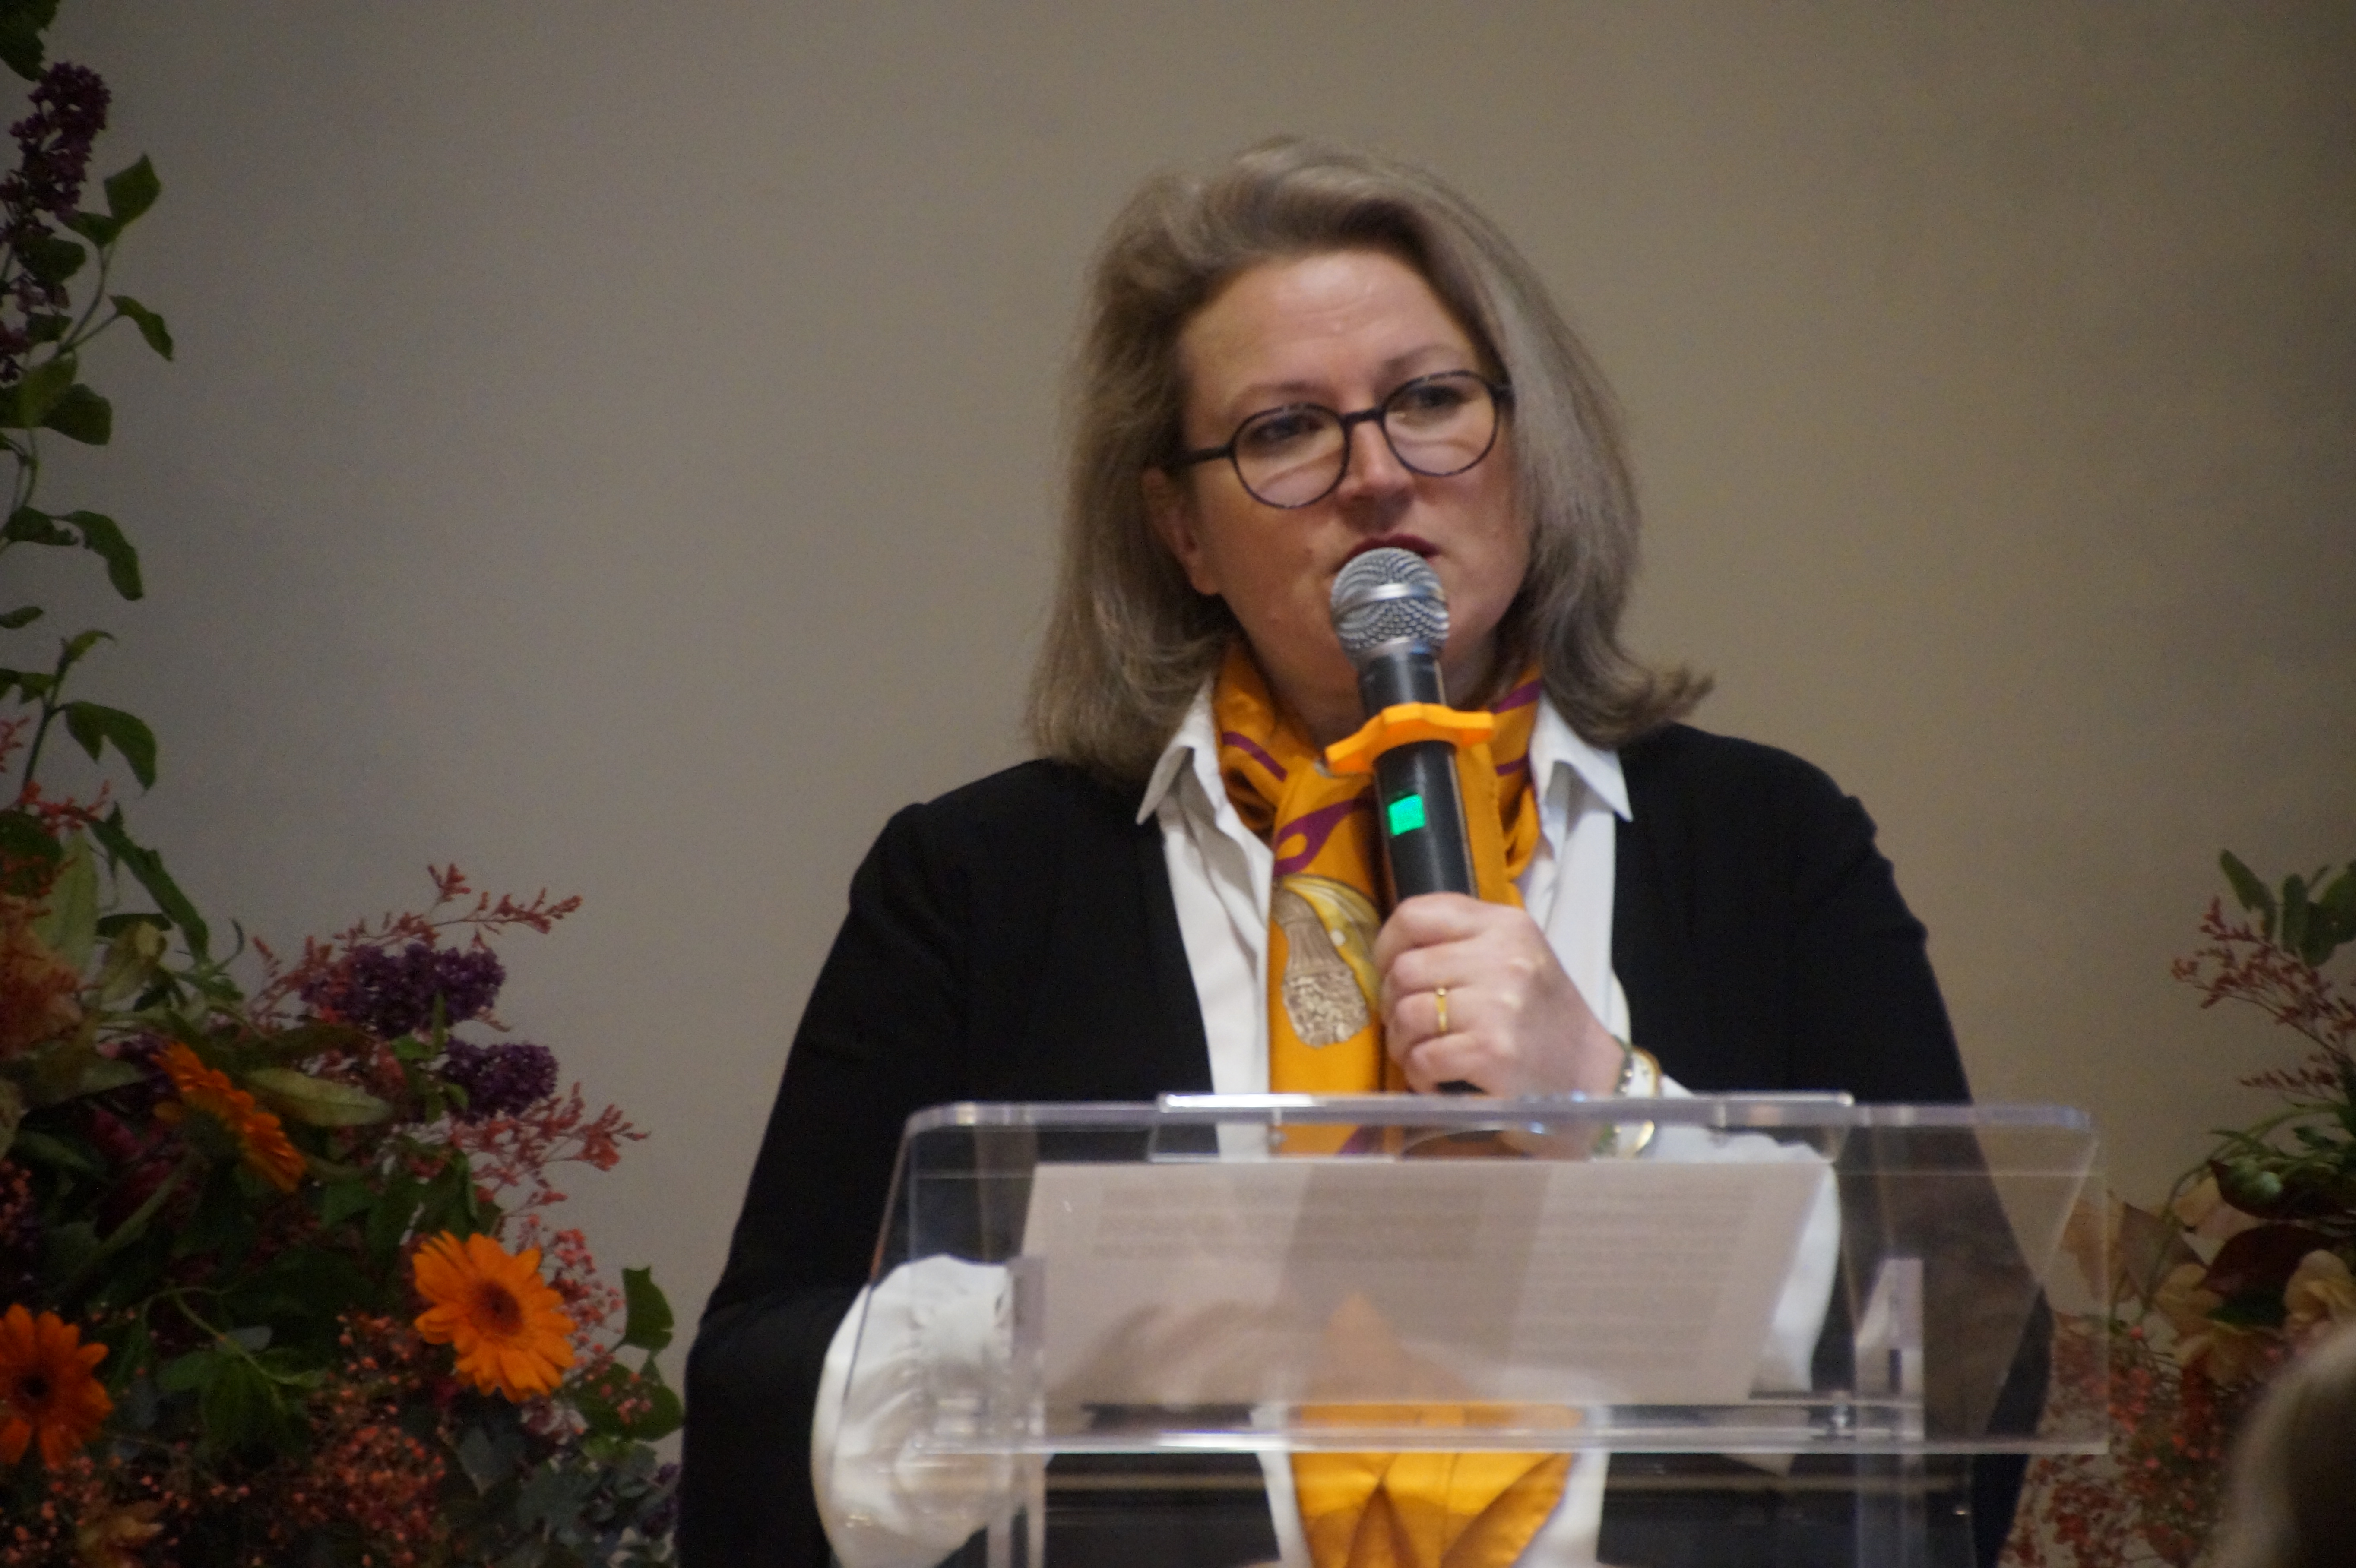 Sophie Ménard, Secrétaire à date de l’Assemblée spirituelle nationale des bahá’ís de France, a prononcé un discours au nom de l’Assemblée.